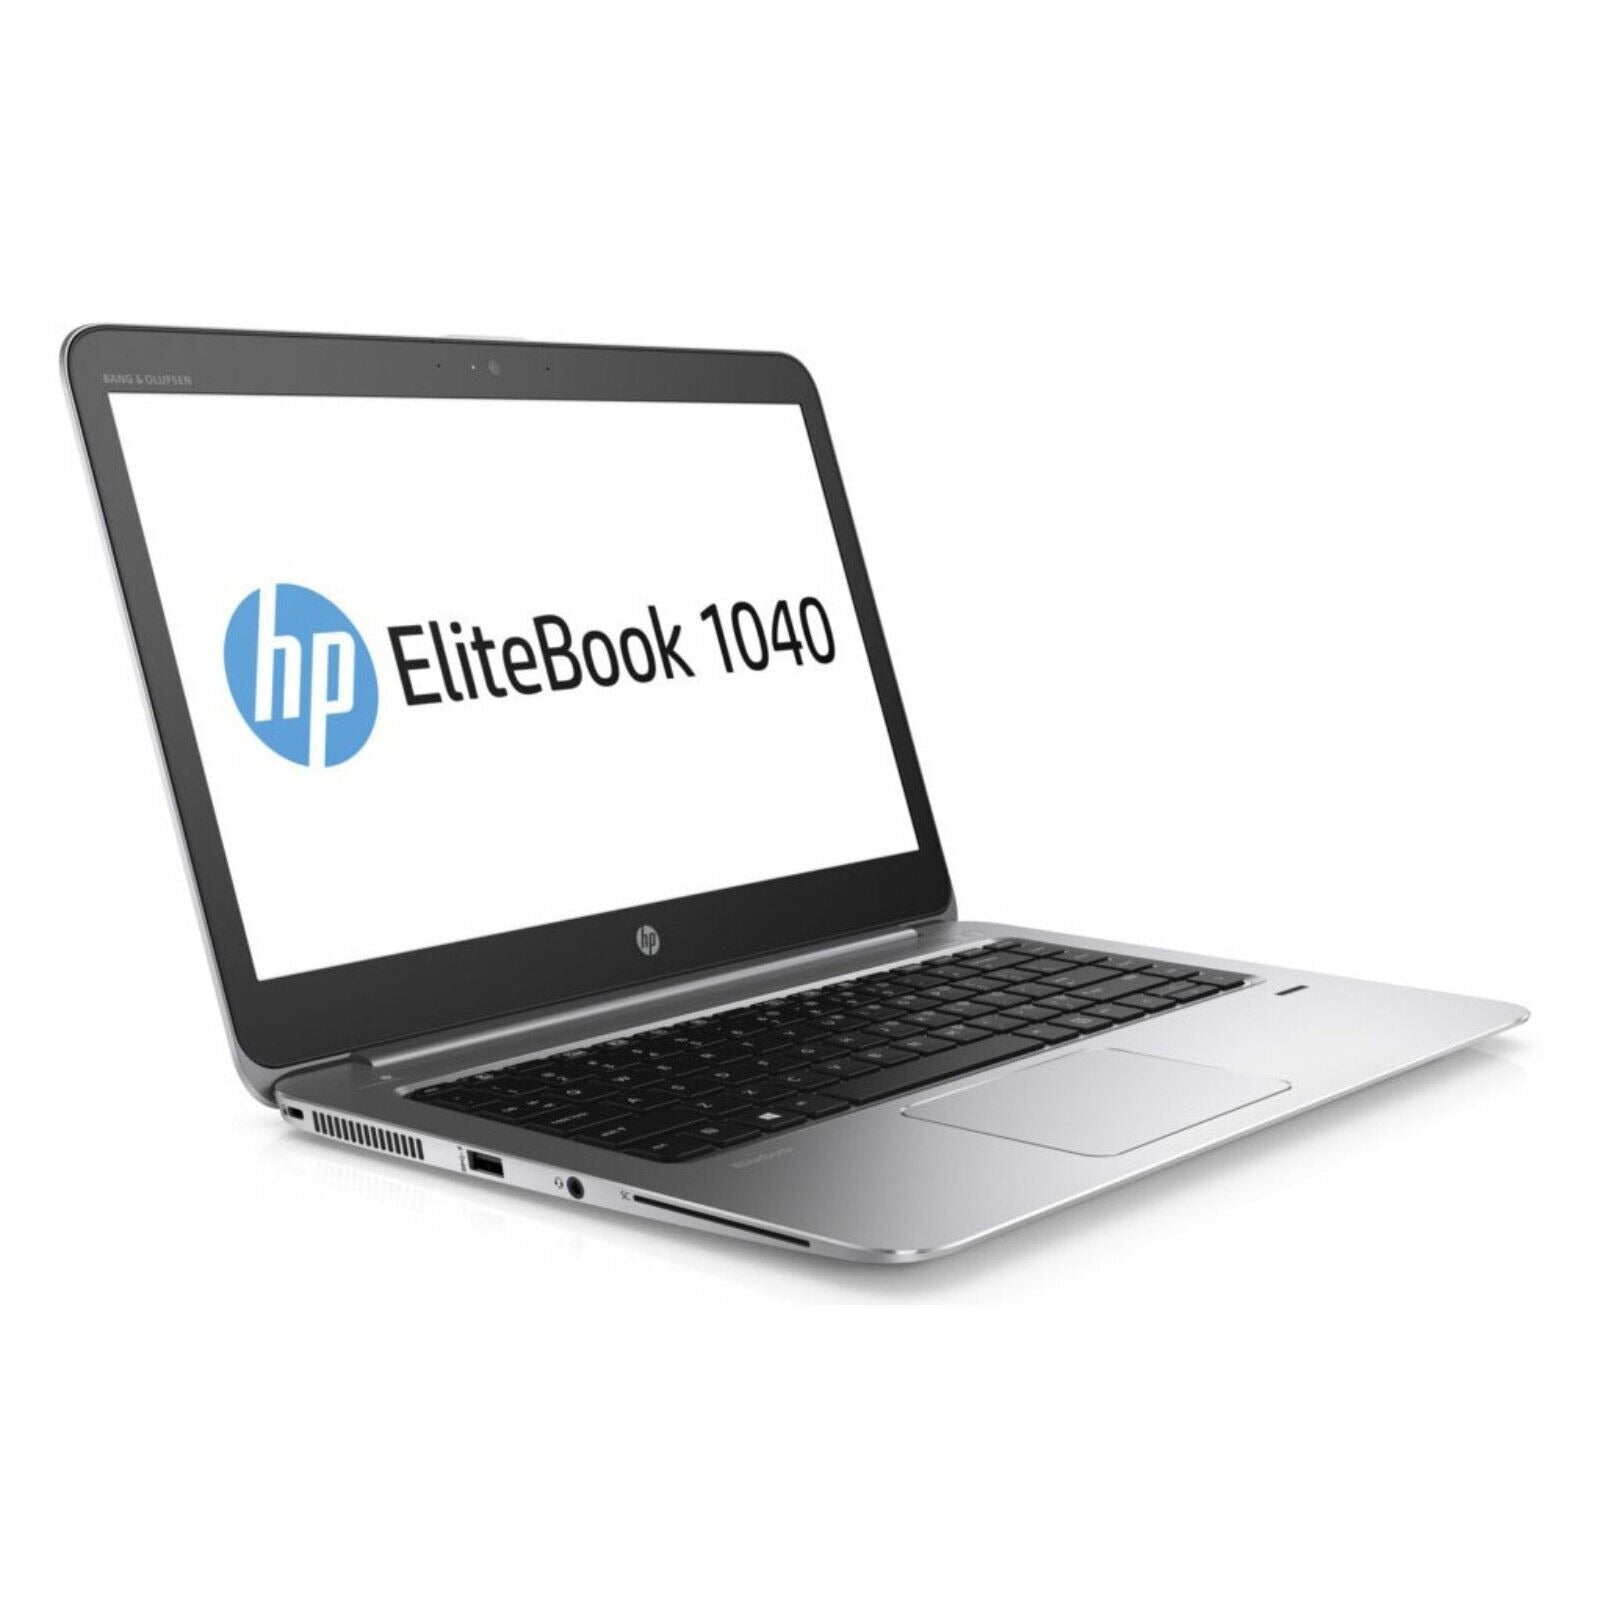 HP EliteBook 1040 G3 QHD Touch laptop: i5-6300U, 16GB RAM, 360GB SSD, Warranty